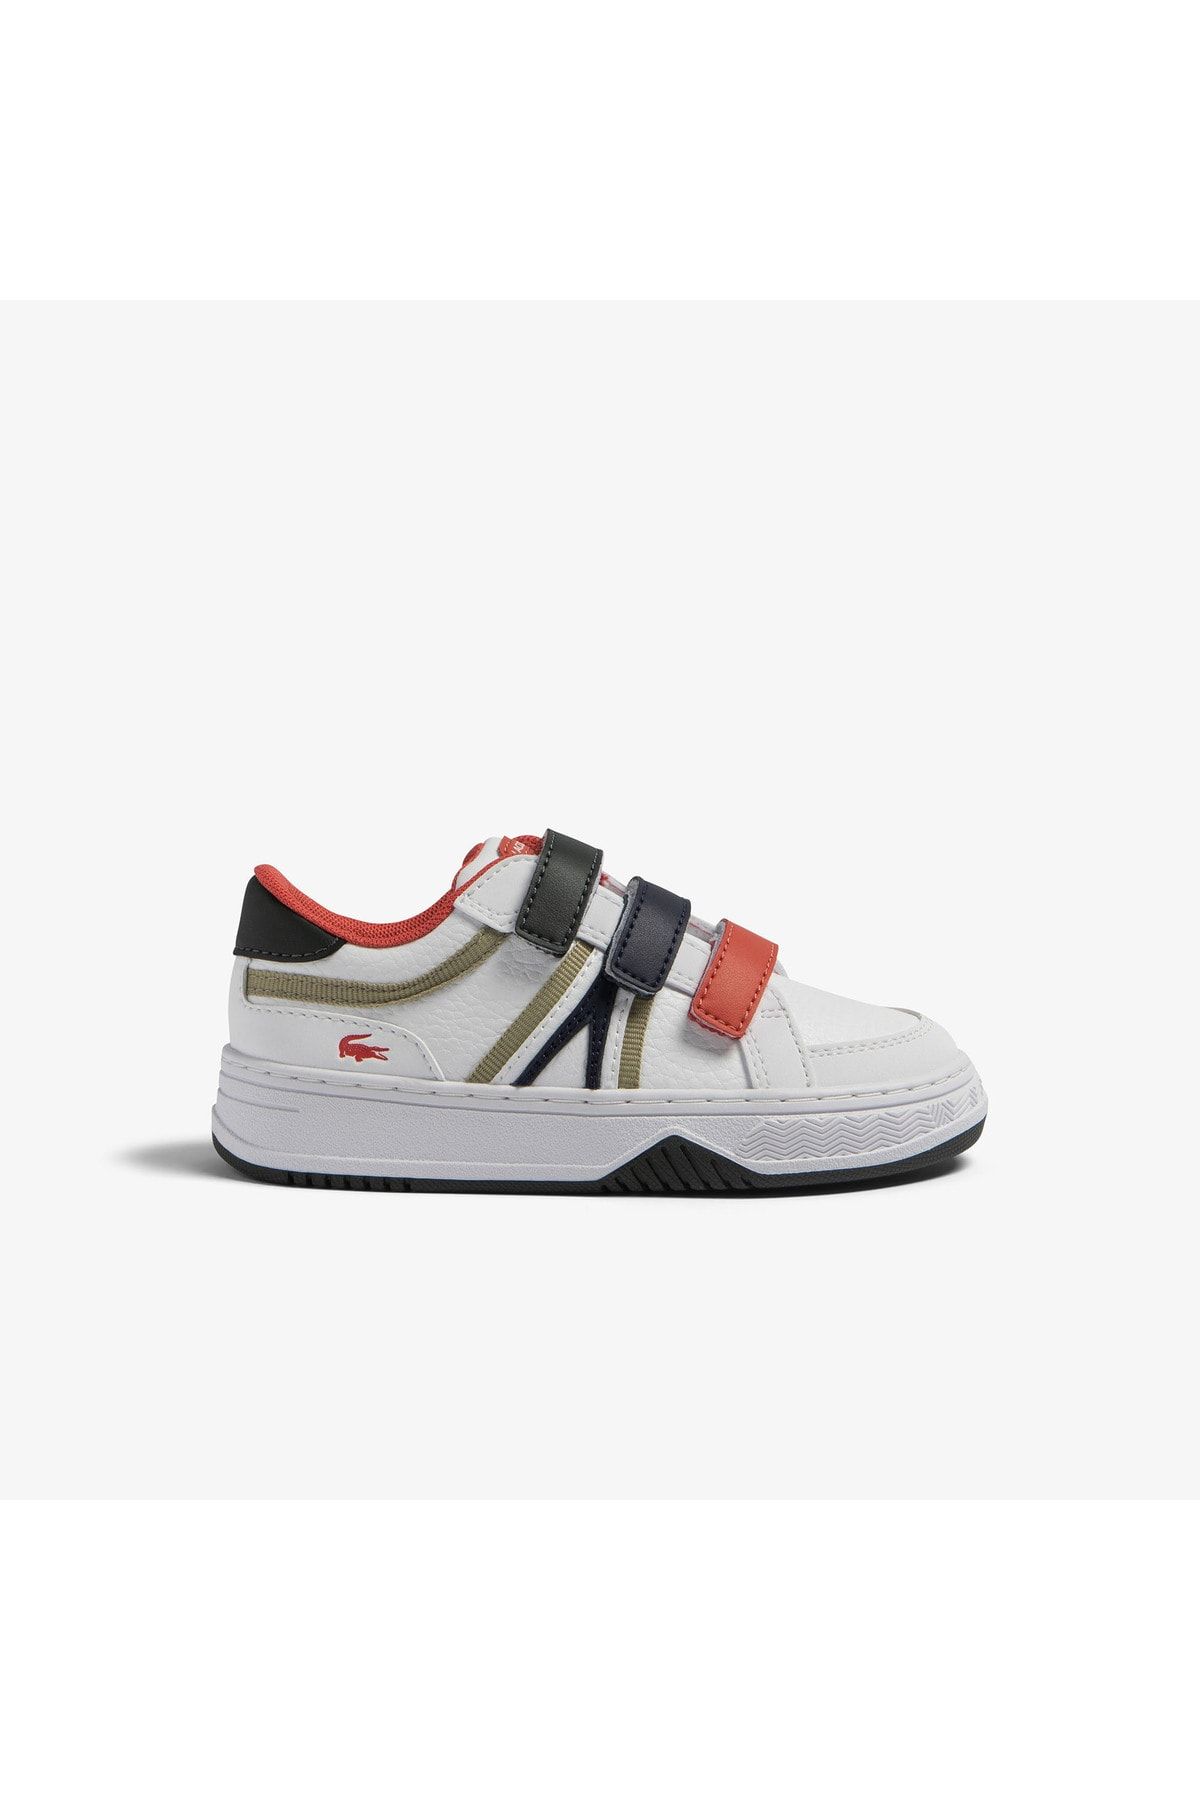 Lacoste L001 Çocuk Beyaz Sneaker